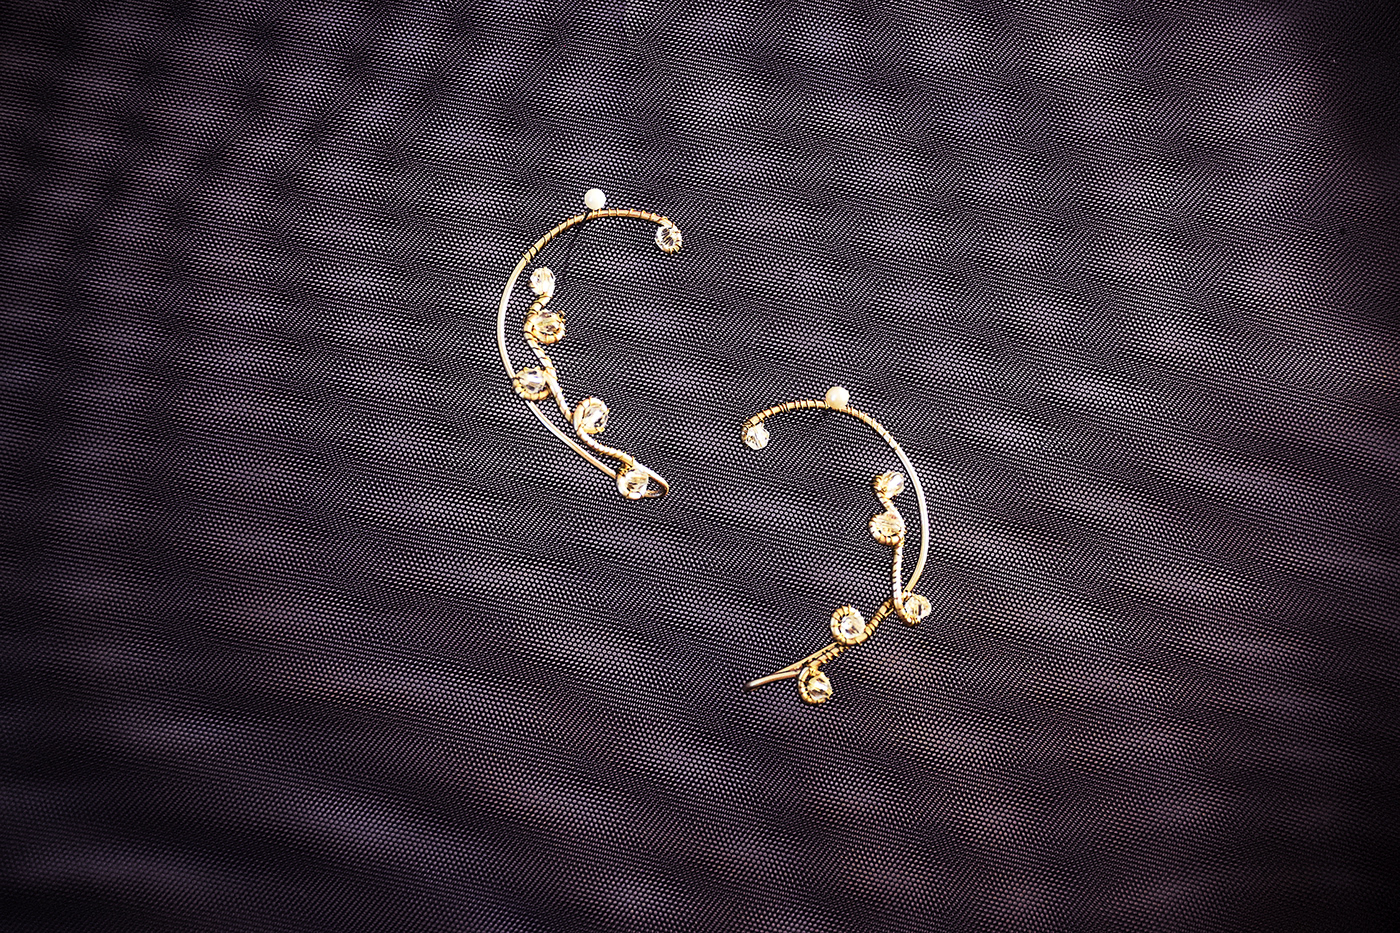 Earring design earrings Earrings for women handmade Jewellery Jewelry Design  Small Business